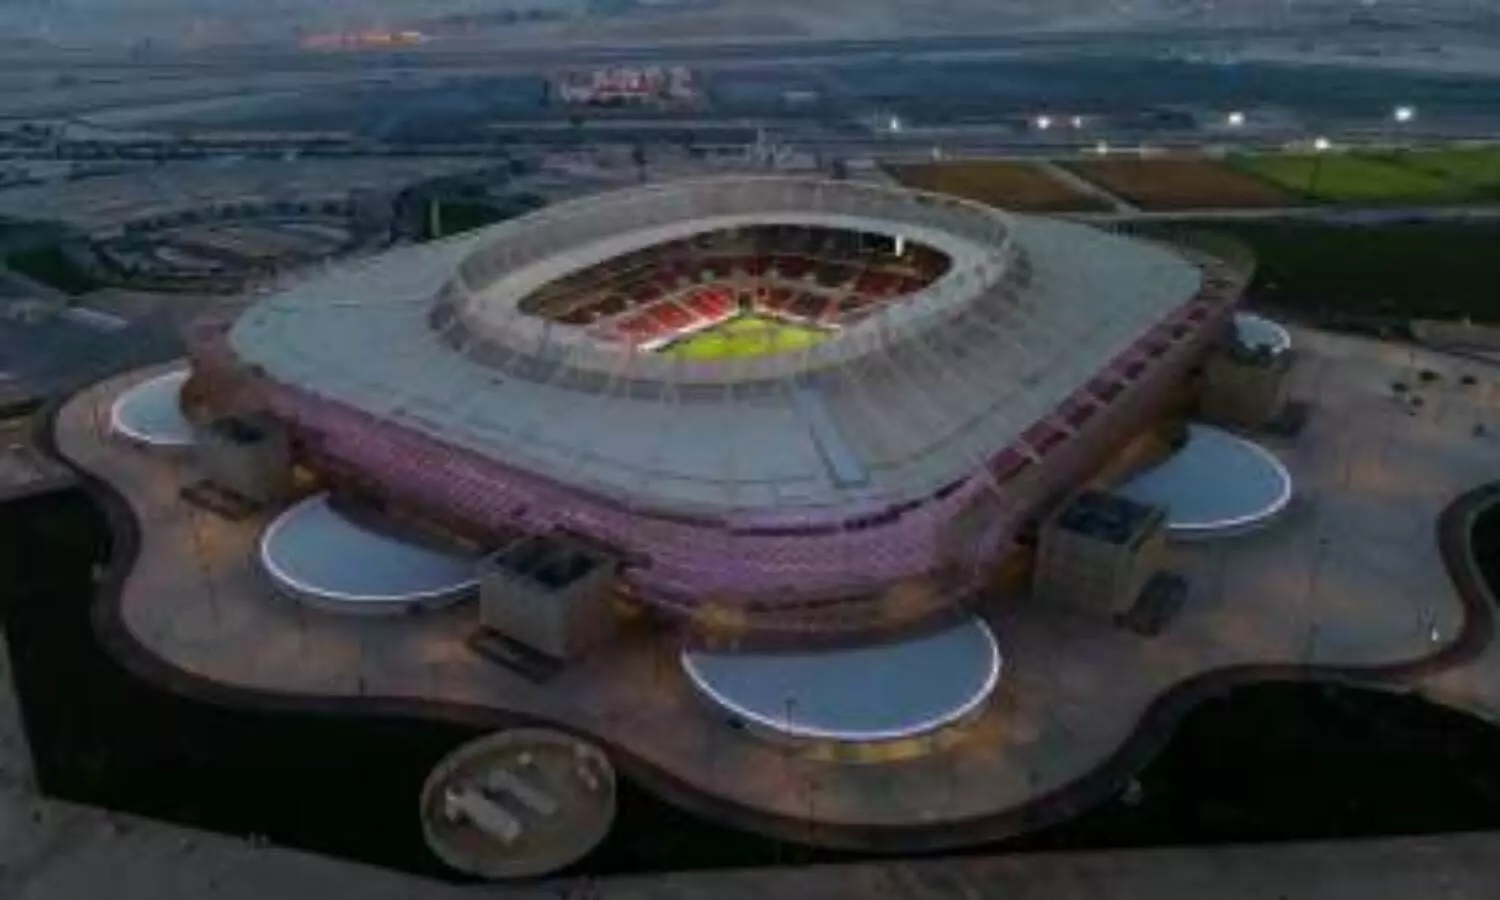 FIFA World Cup 2022: कतर के इन 8 खूबसूरत स्टेडियमों में खेला जाएगा फीफा वर्ल्ड कप, देखें इन स्टेडियम की खूबसूरत तस्वीरें